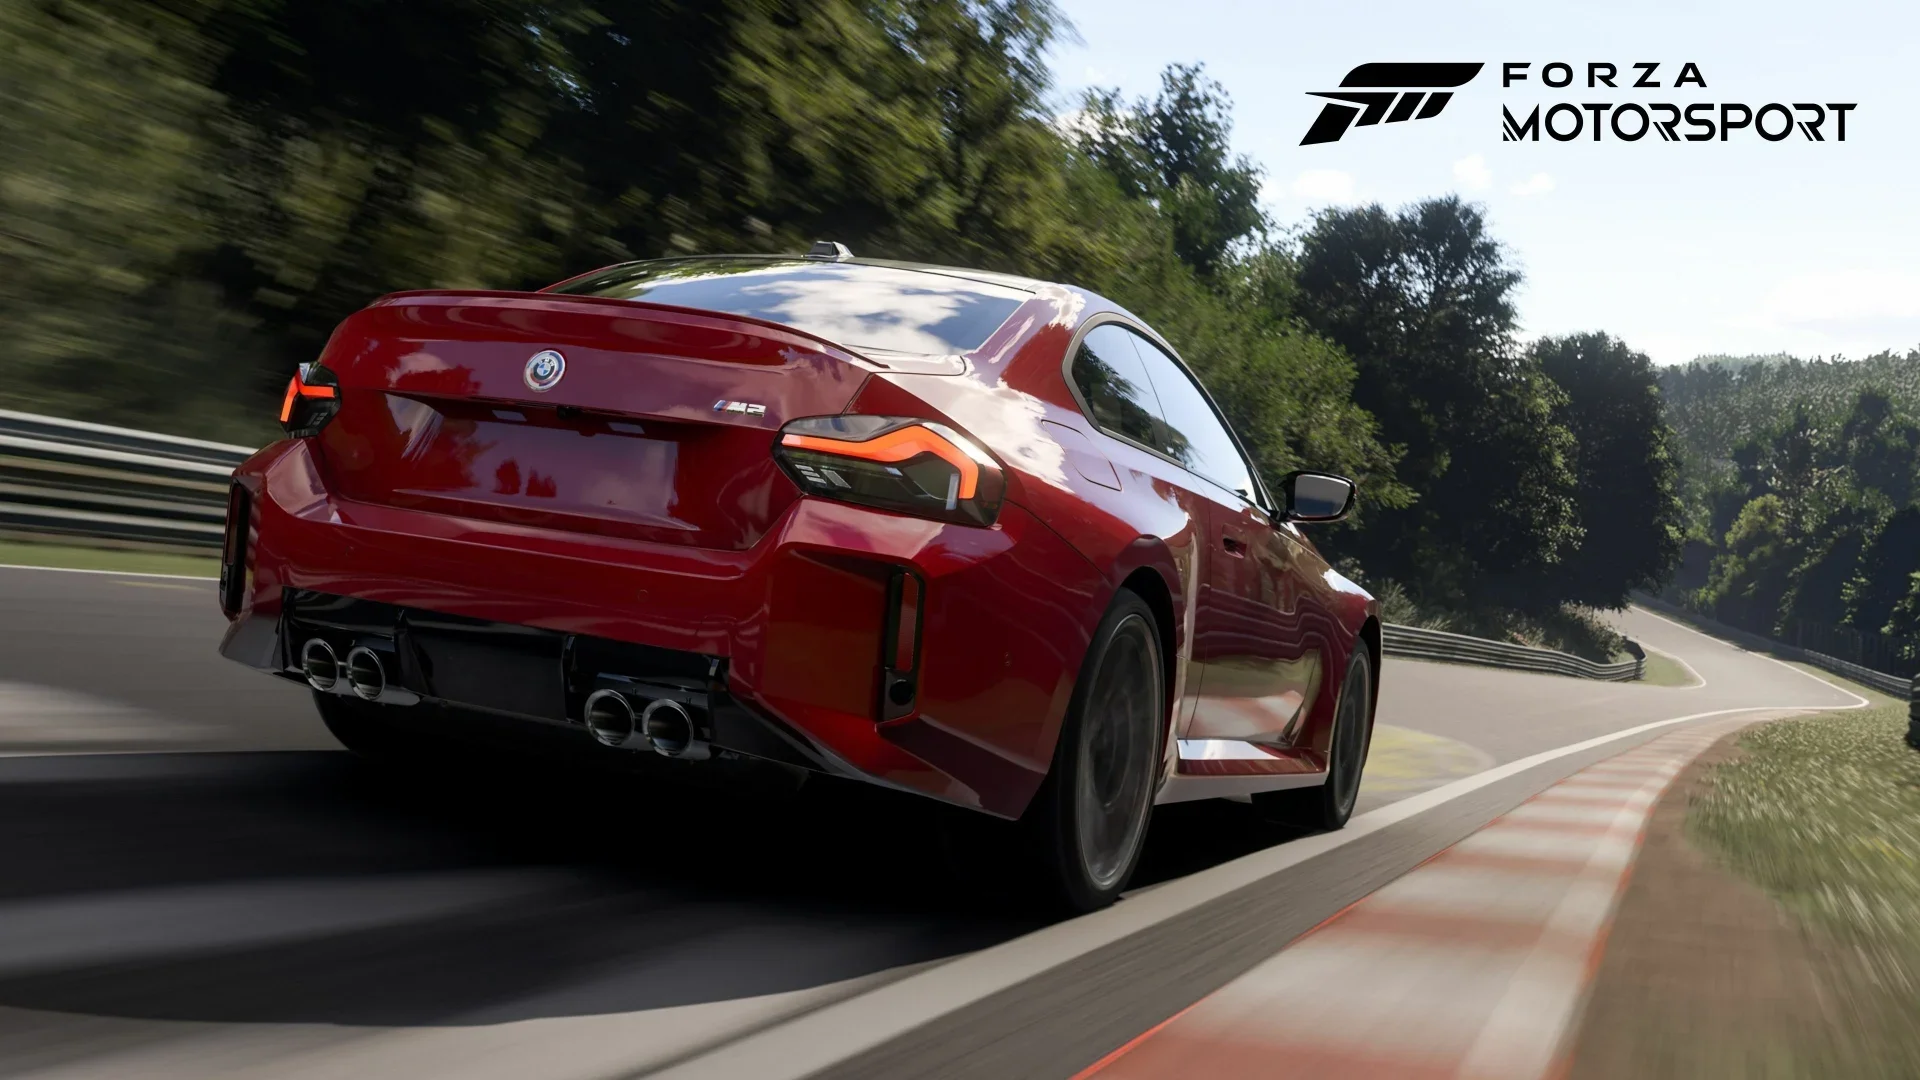 Вышло обновление для Forza Motorsport. Оно, помимо прочего, добавило легендарную трассу